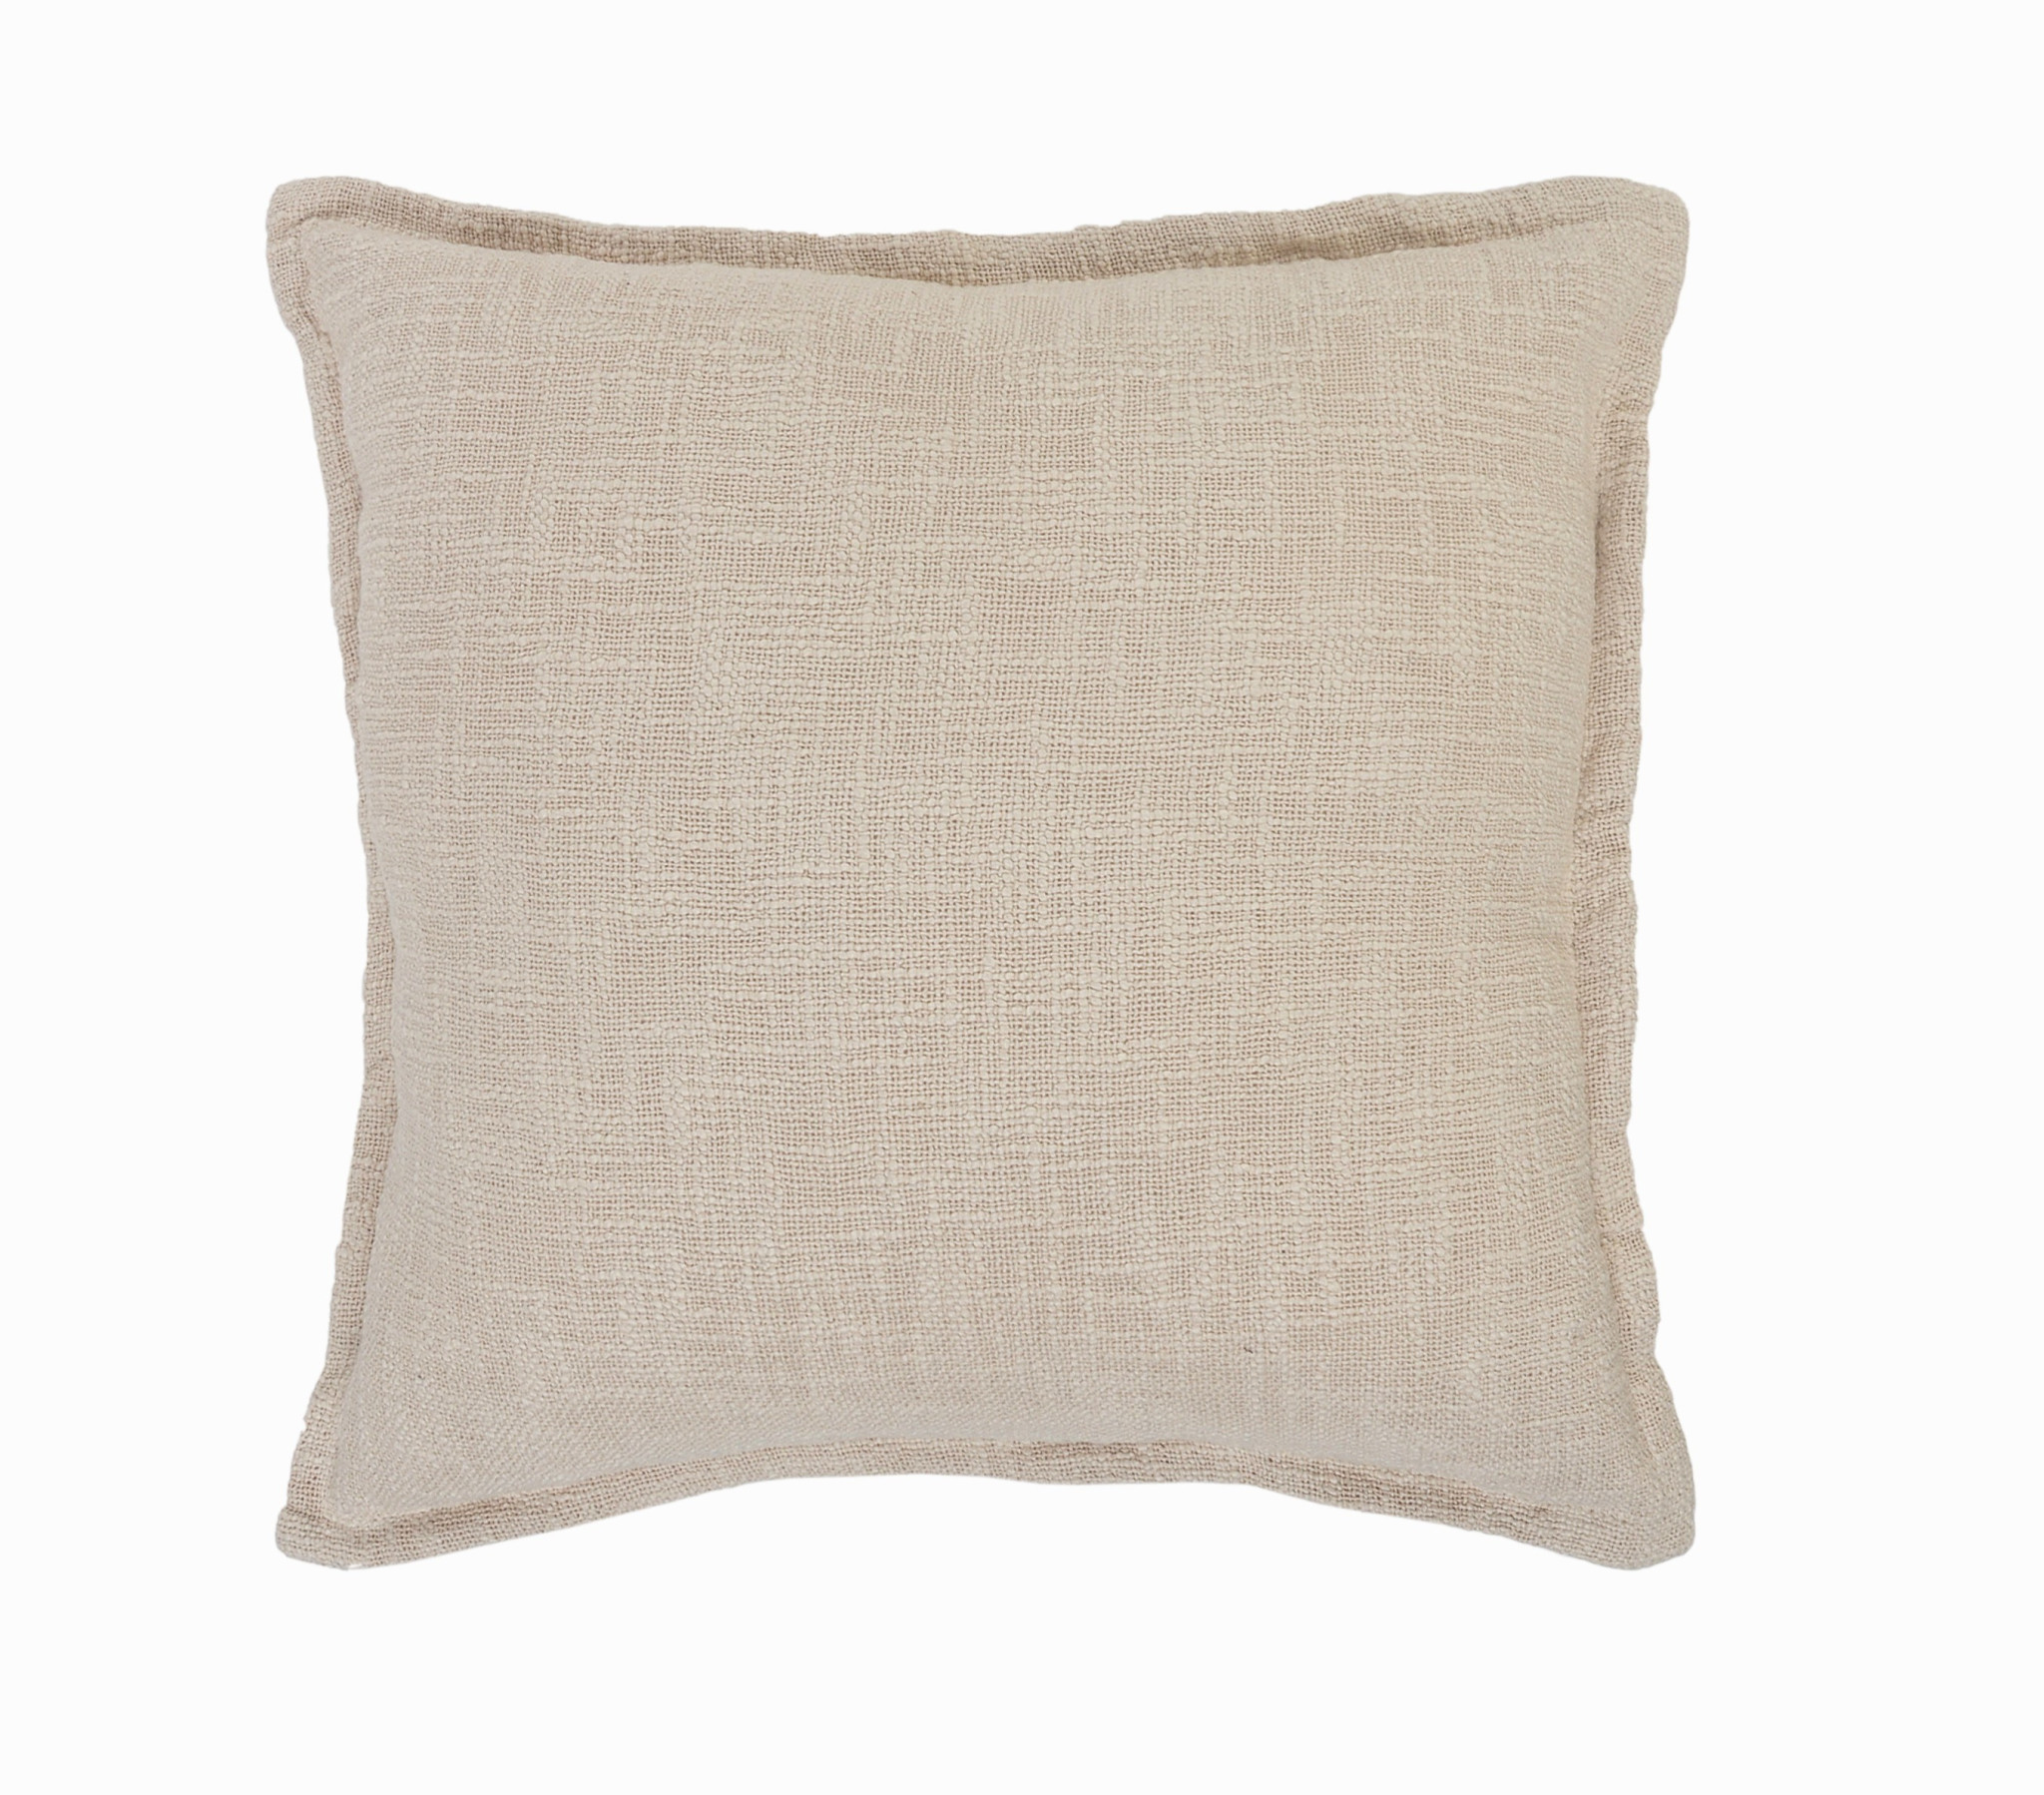 20" X 20" Birch 100% Cotton Zippered Pillow-517182-1